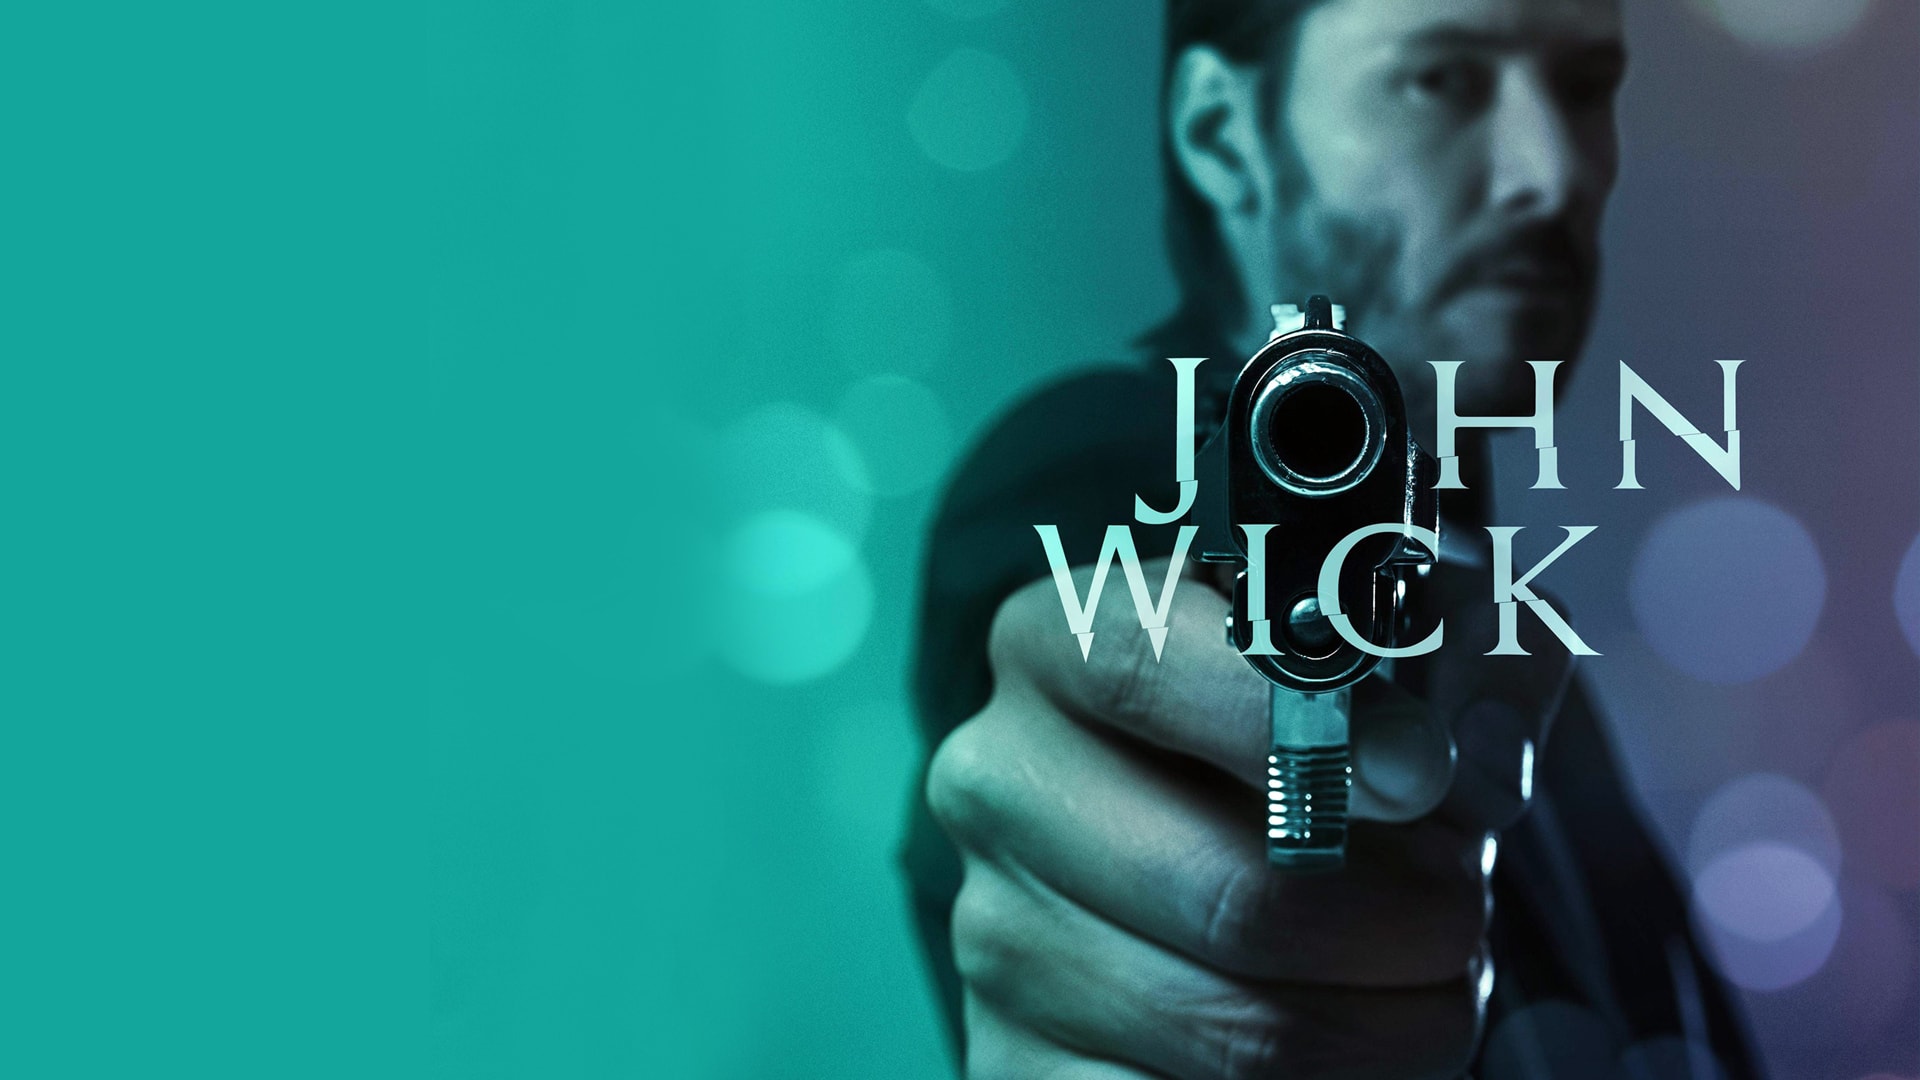 John Wick 4K 2014 big poster